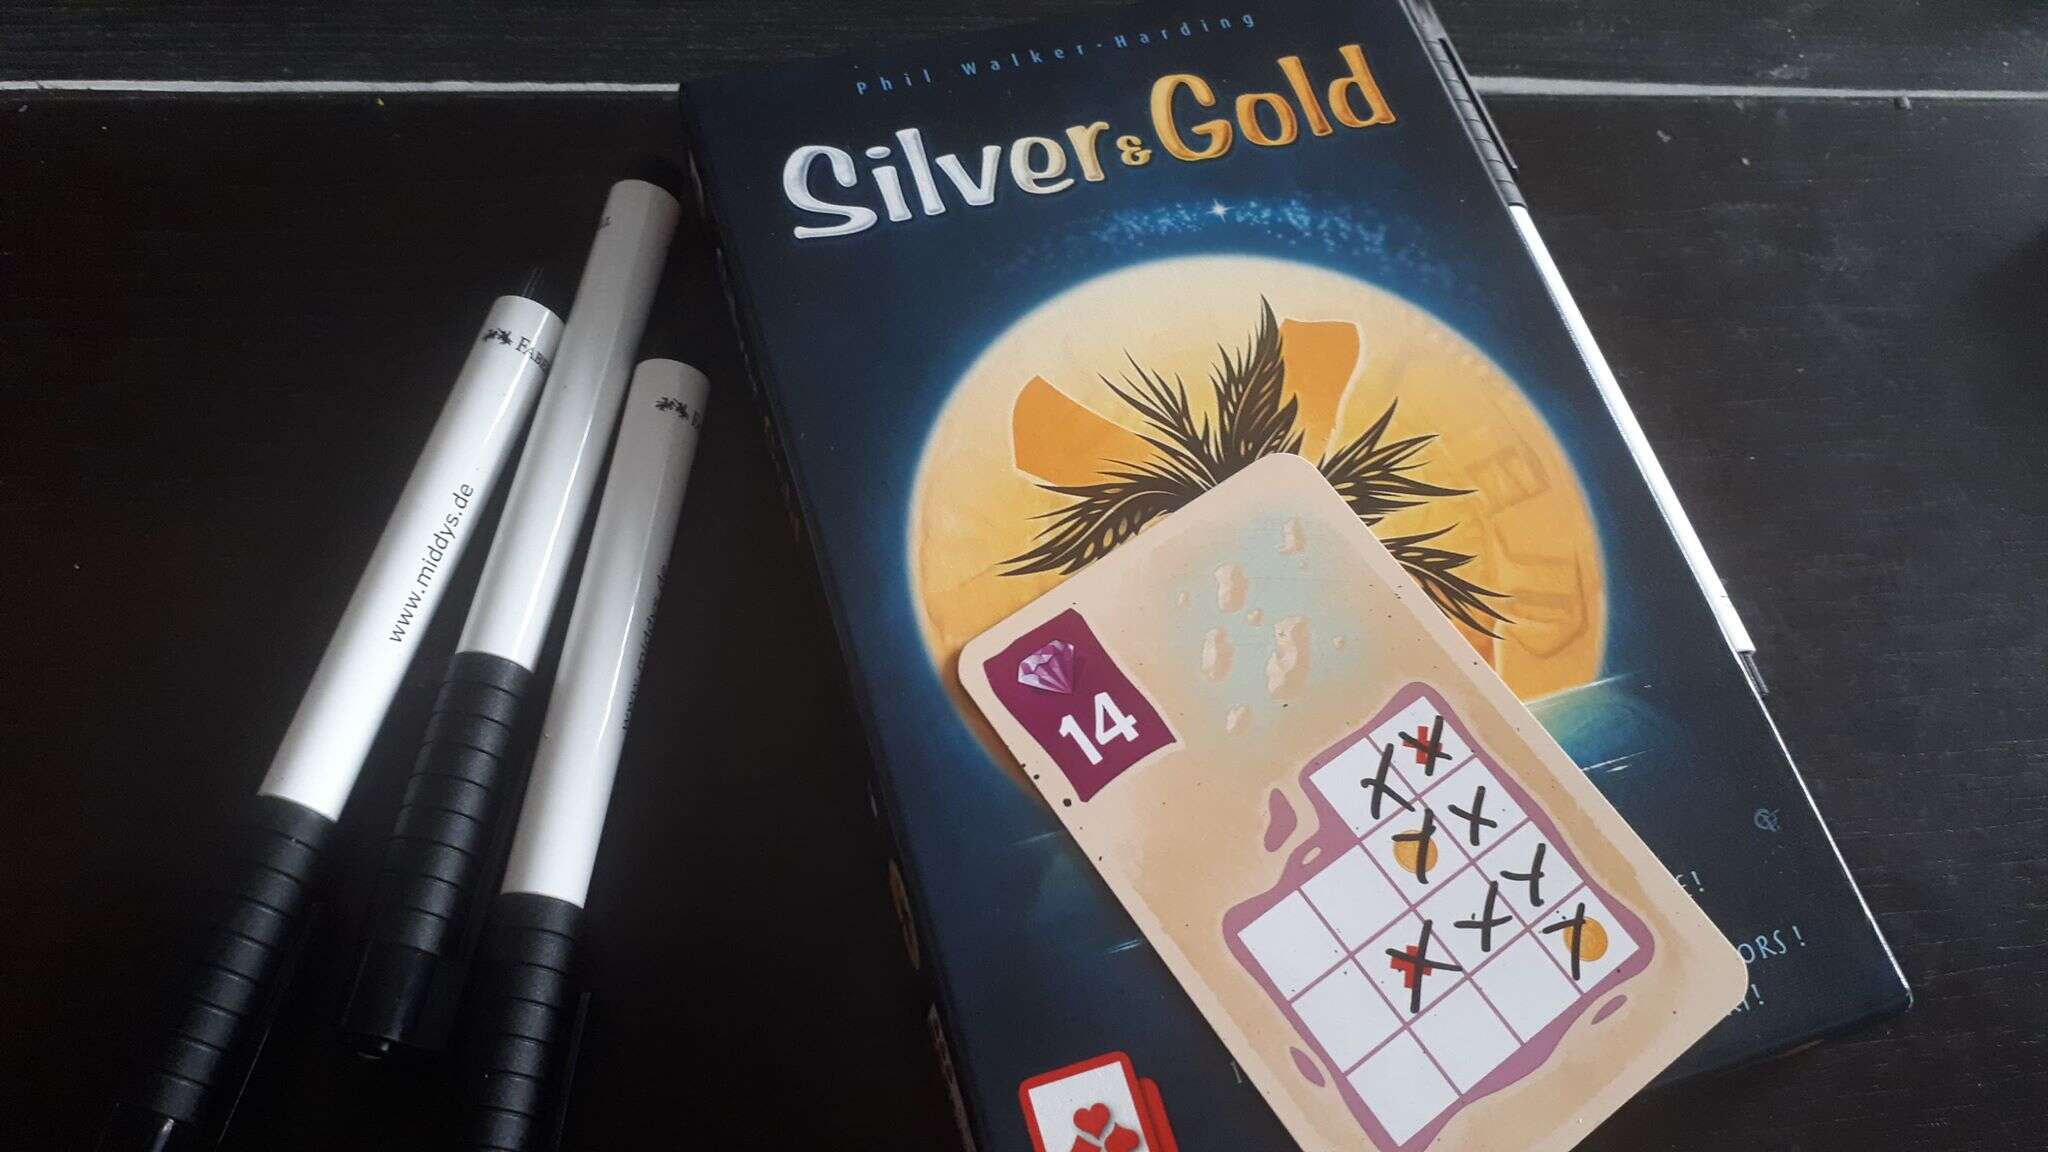 Silver and Gold – търкай, търкай!